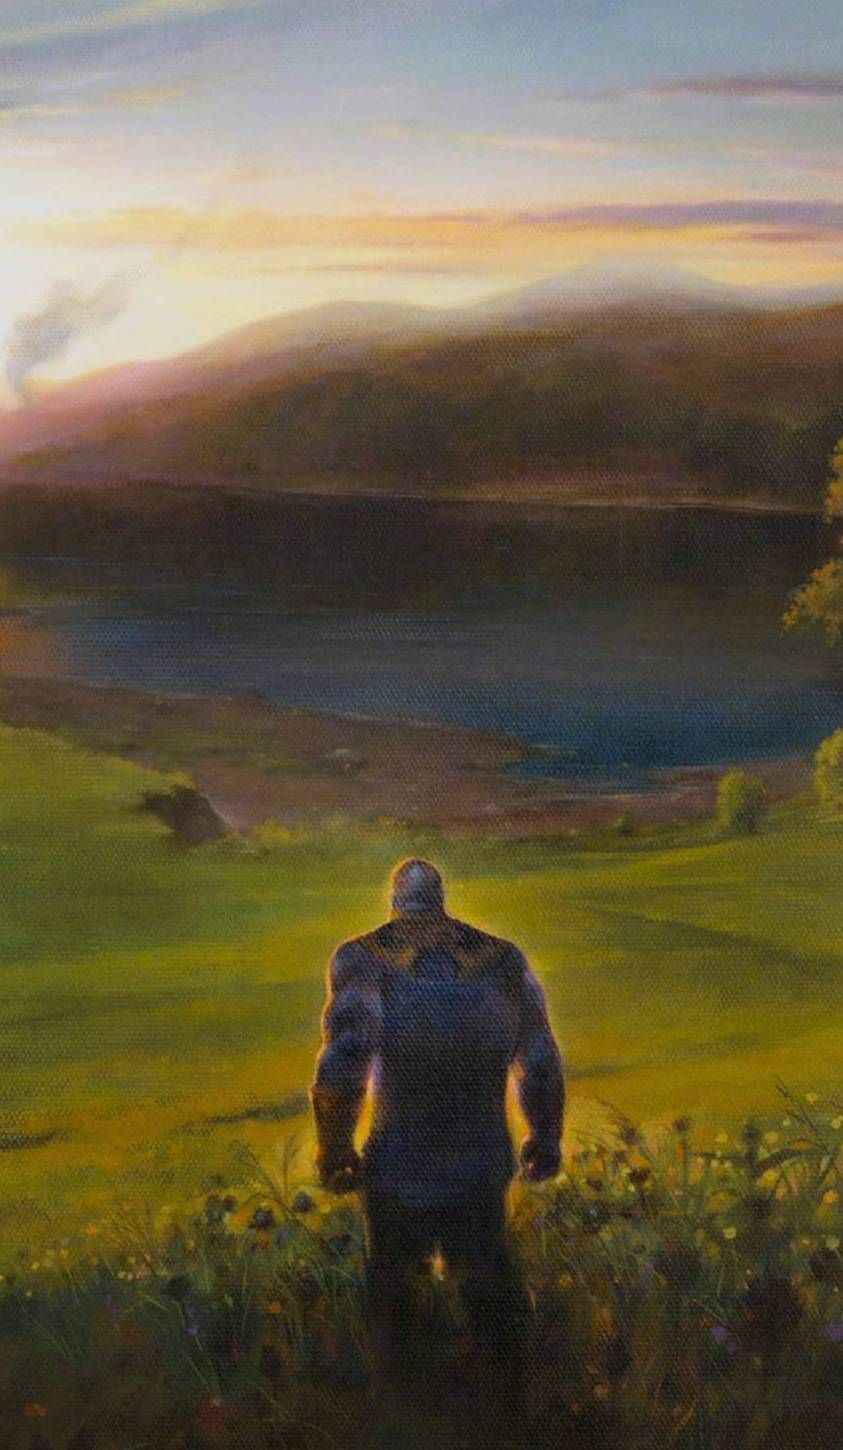 Thanos on his farm in Avengers: Endgame